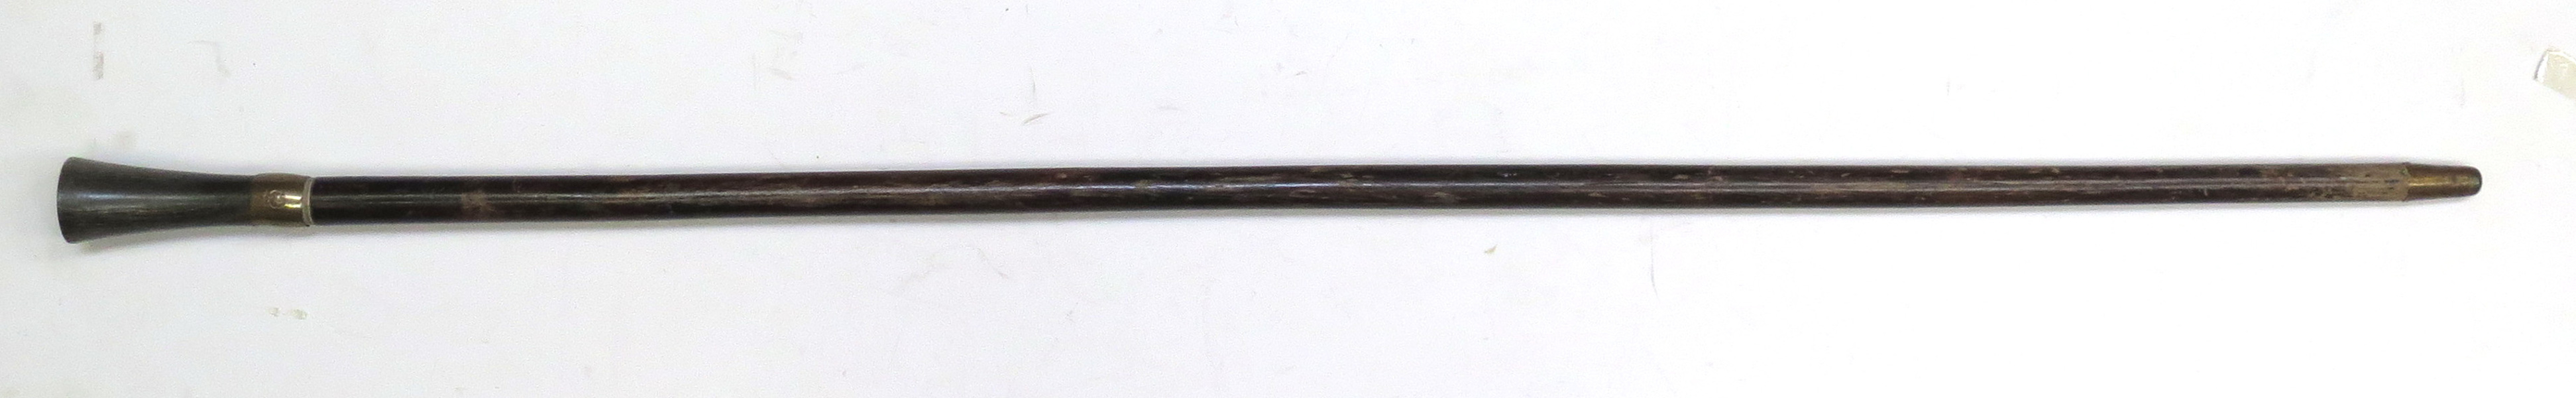 Spatserkäpp med vapensköld, 1800-tal, trä och horn med mässingsbeslag, _9271a_lg.jpeg